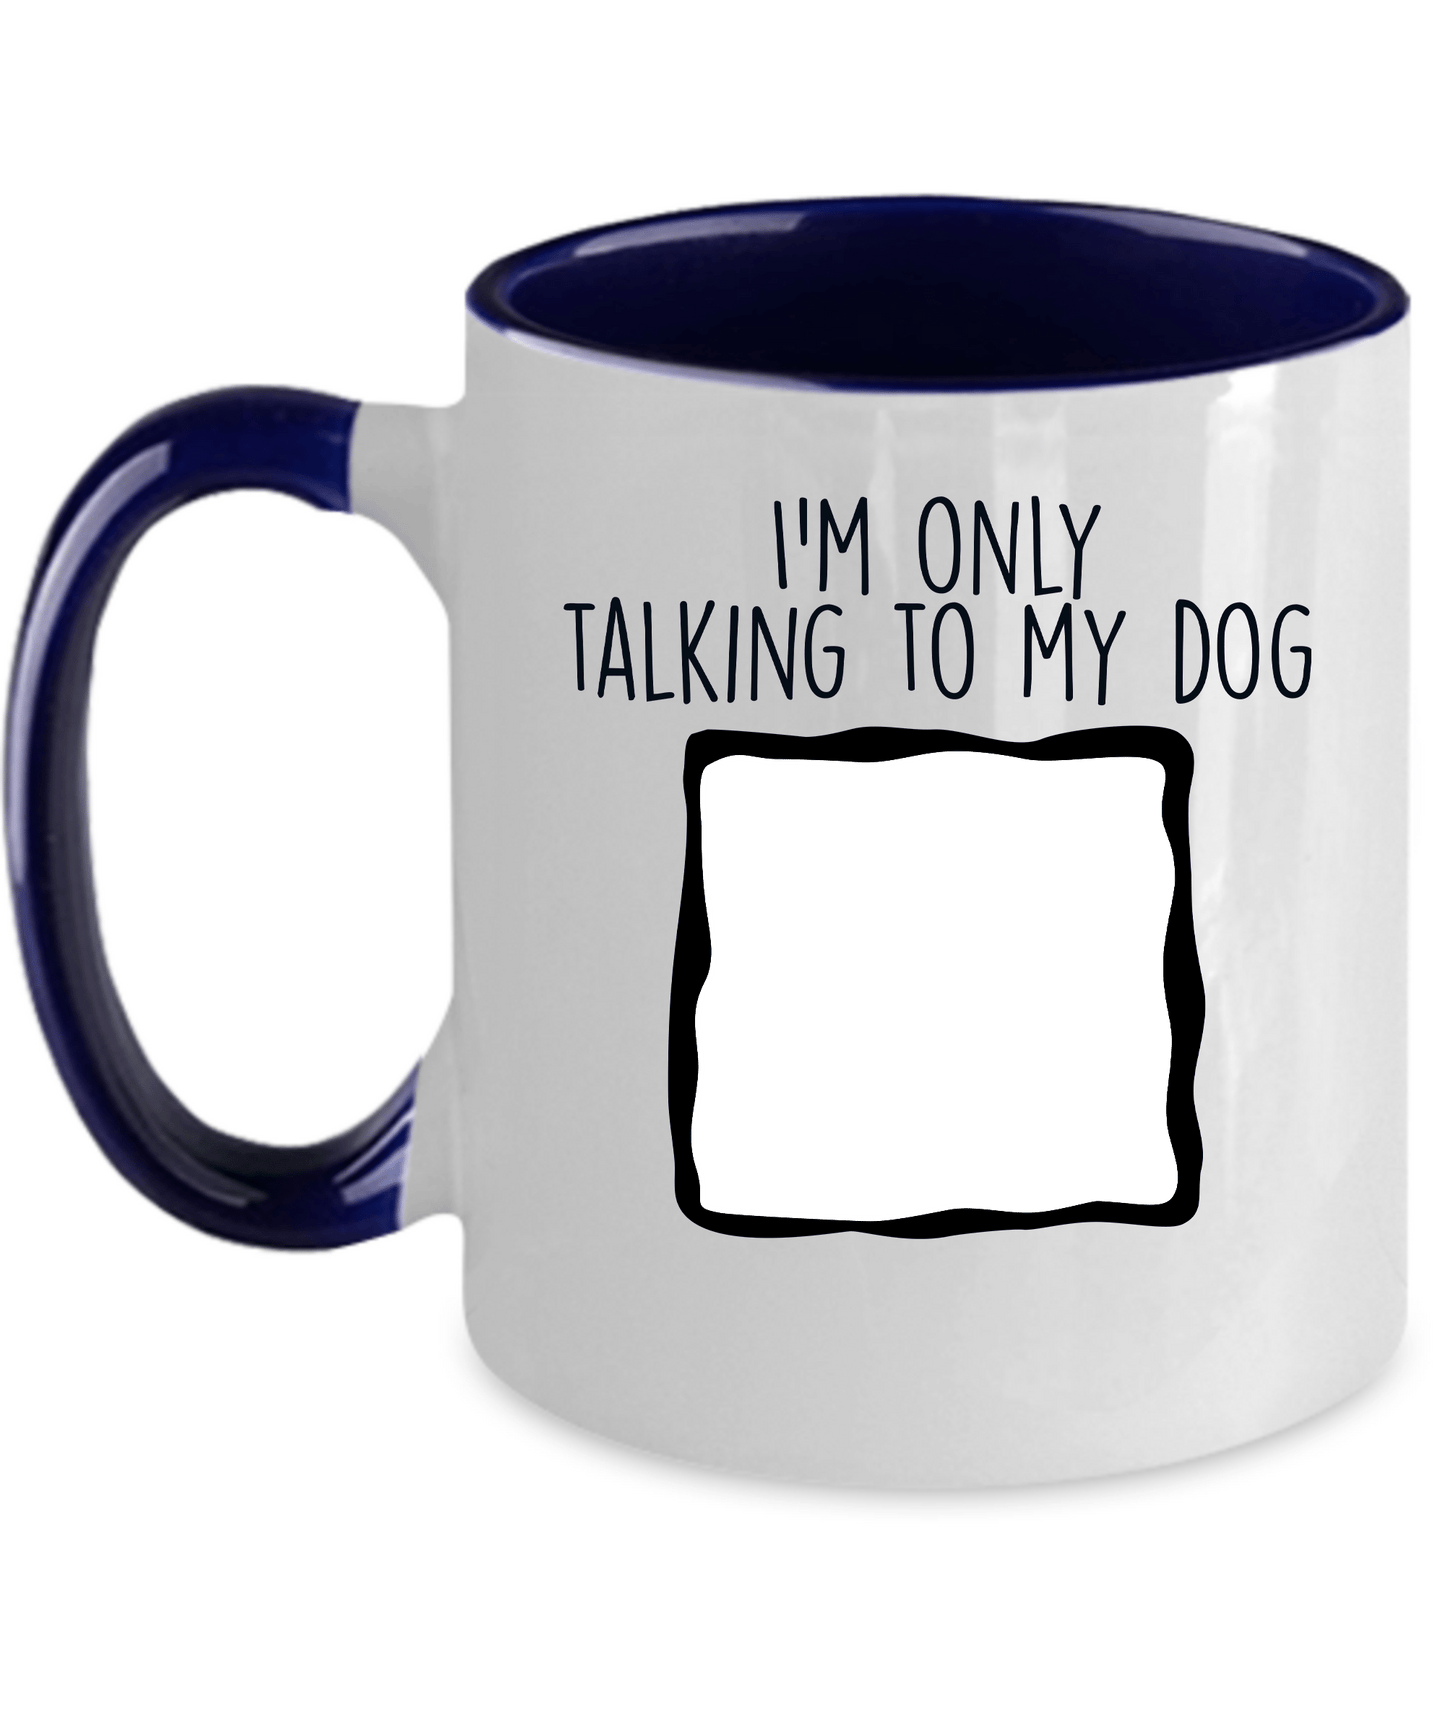 Personalized Photo Upload I'm Only Talking to my Dog Custom Coffee Mug